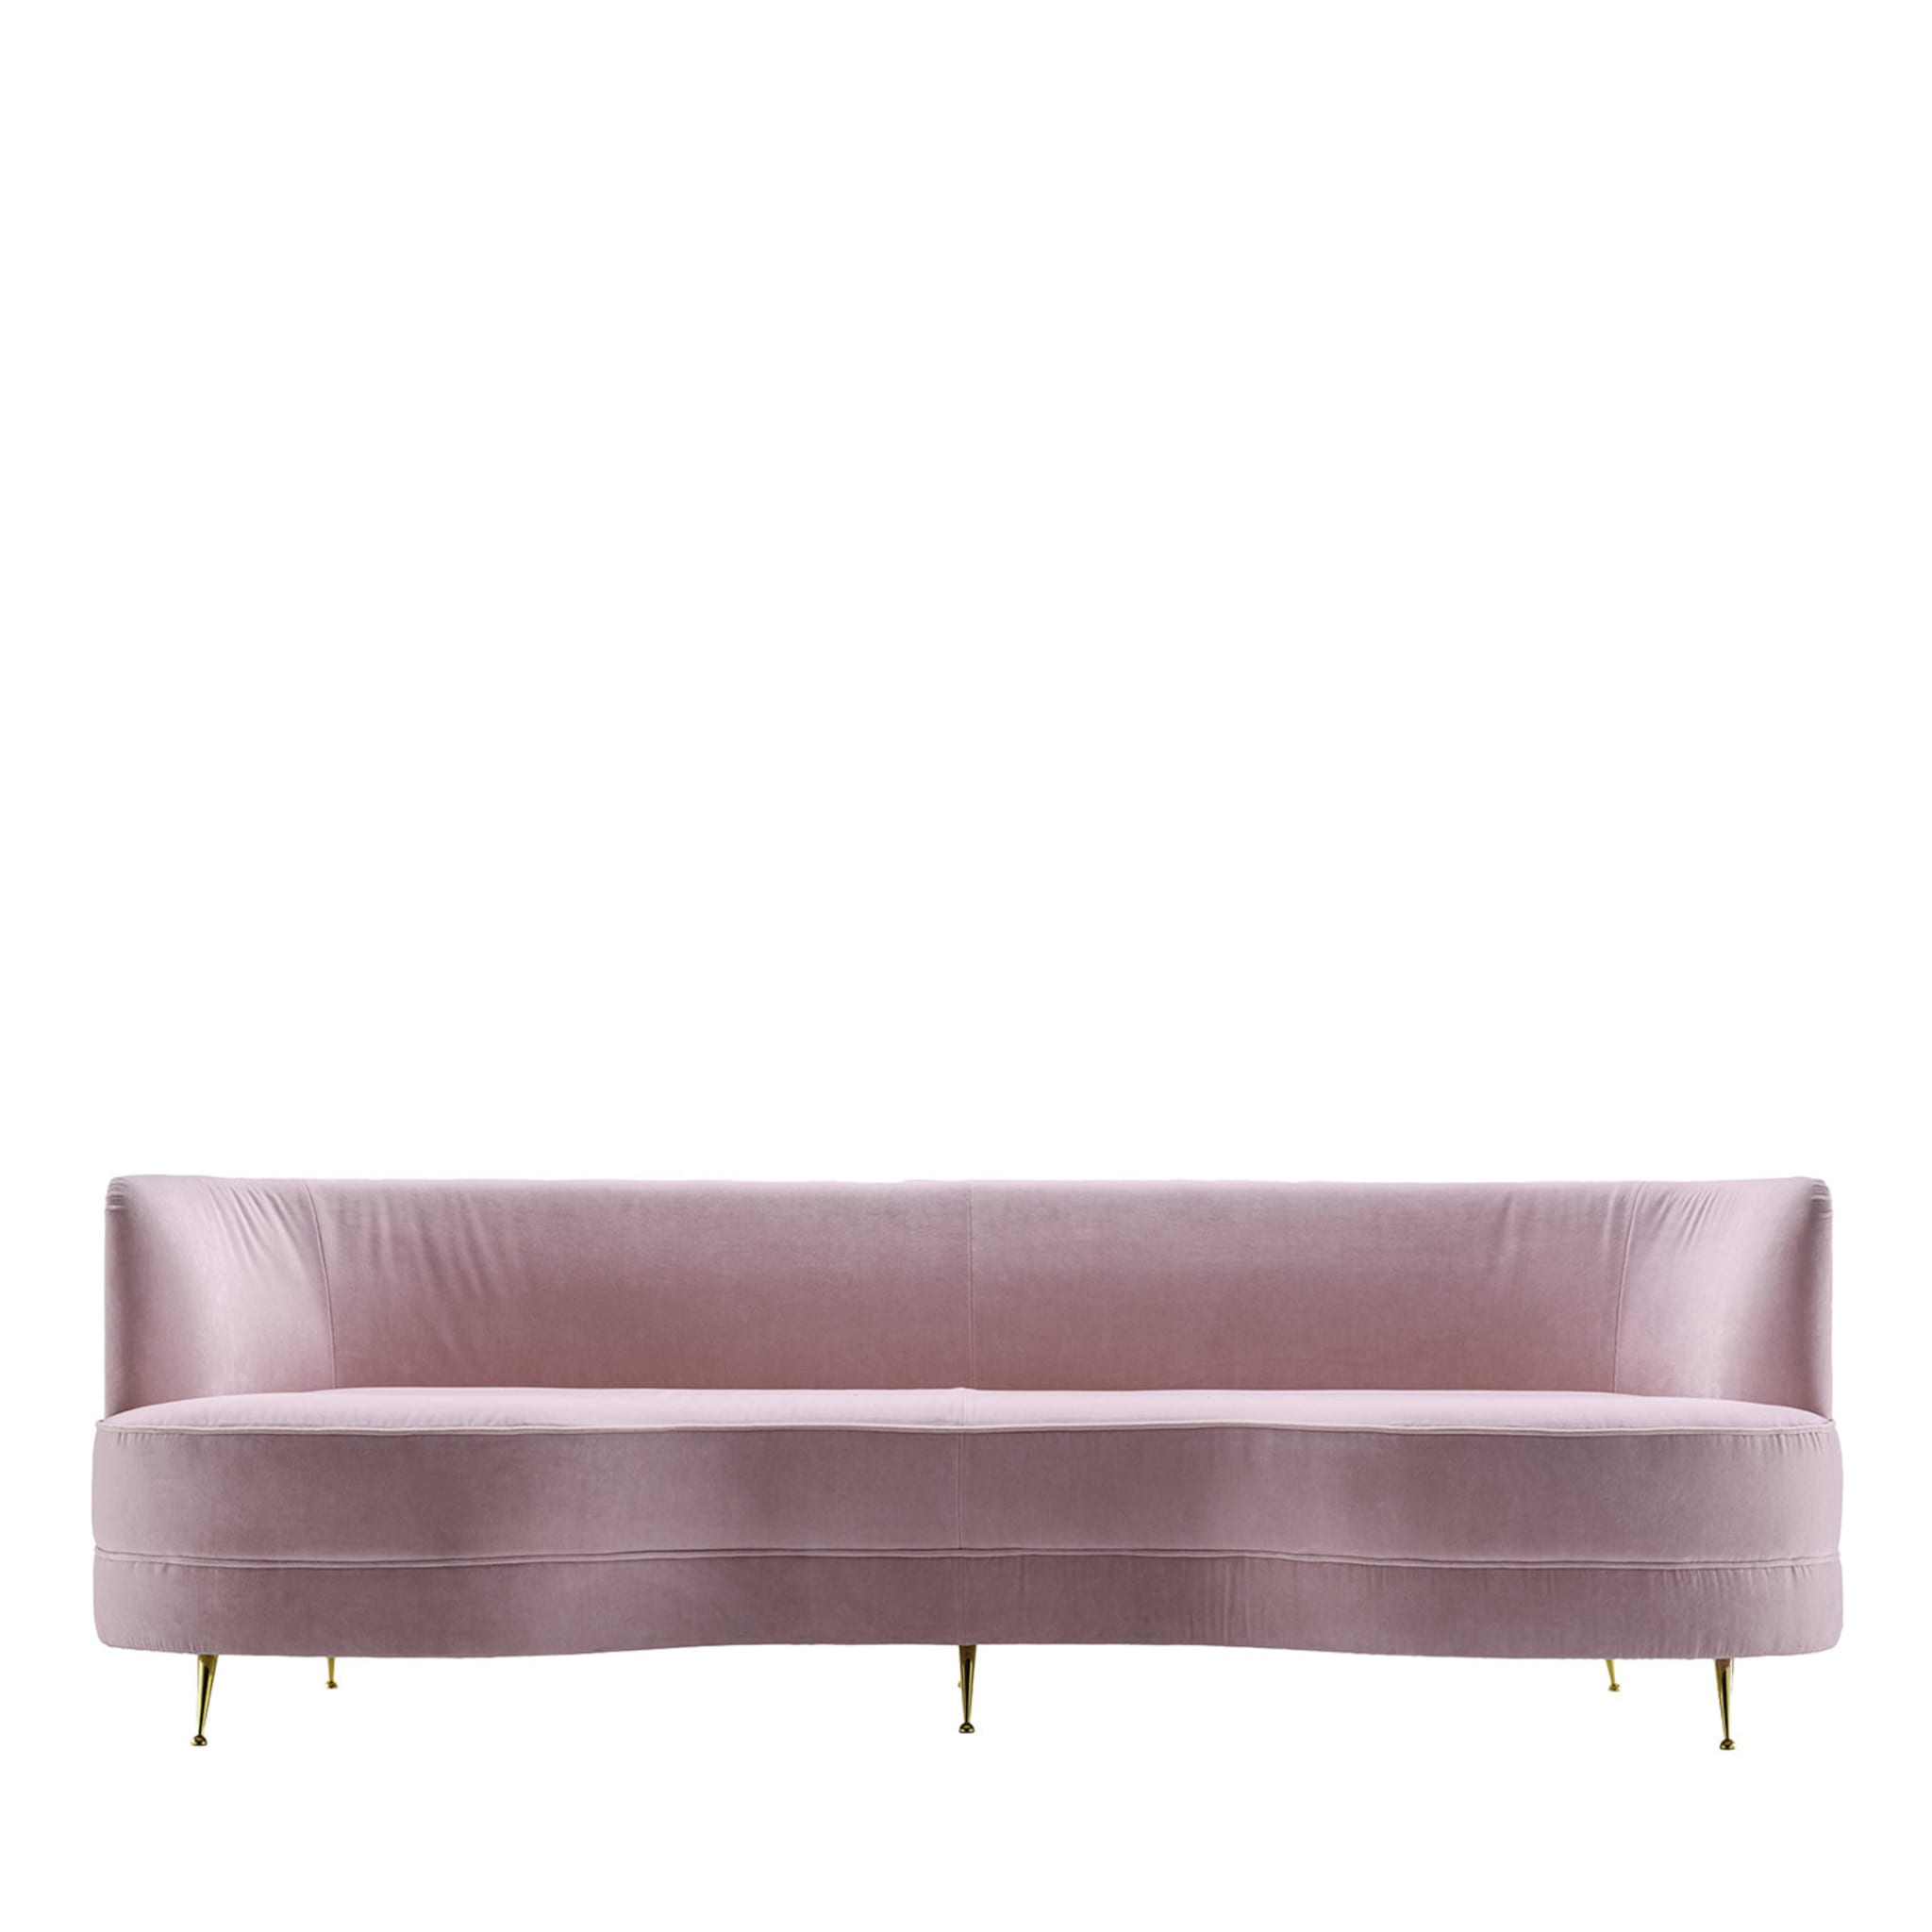 Metropolitan Pink Sofa - Main view